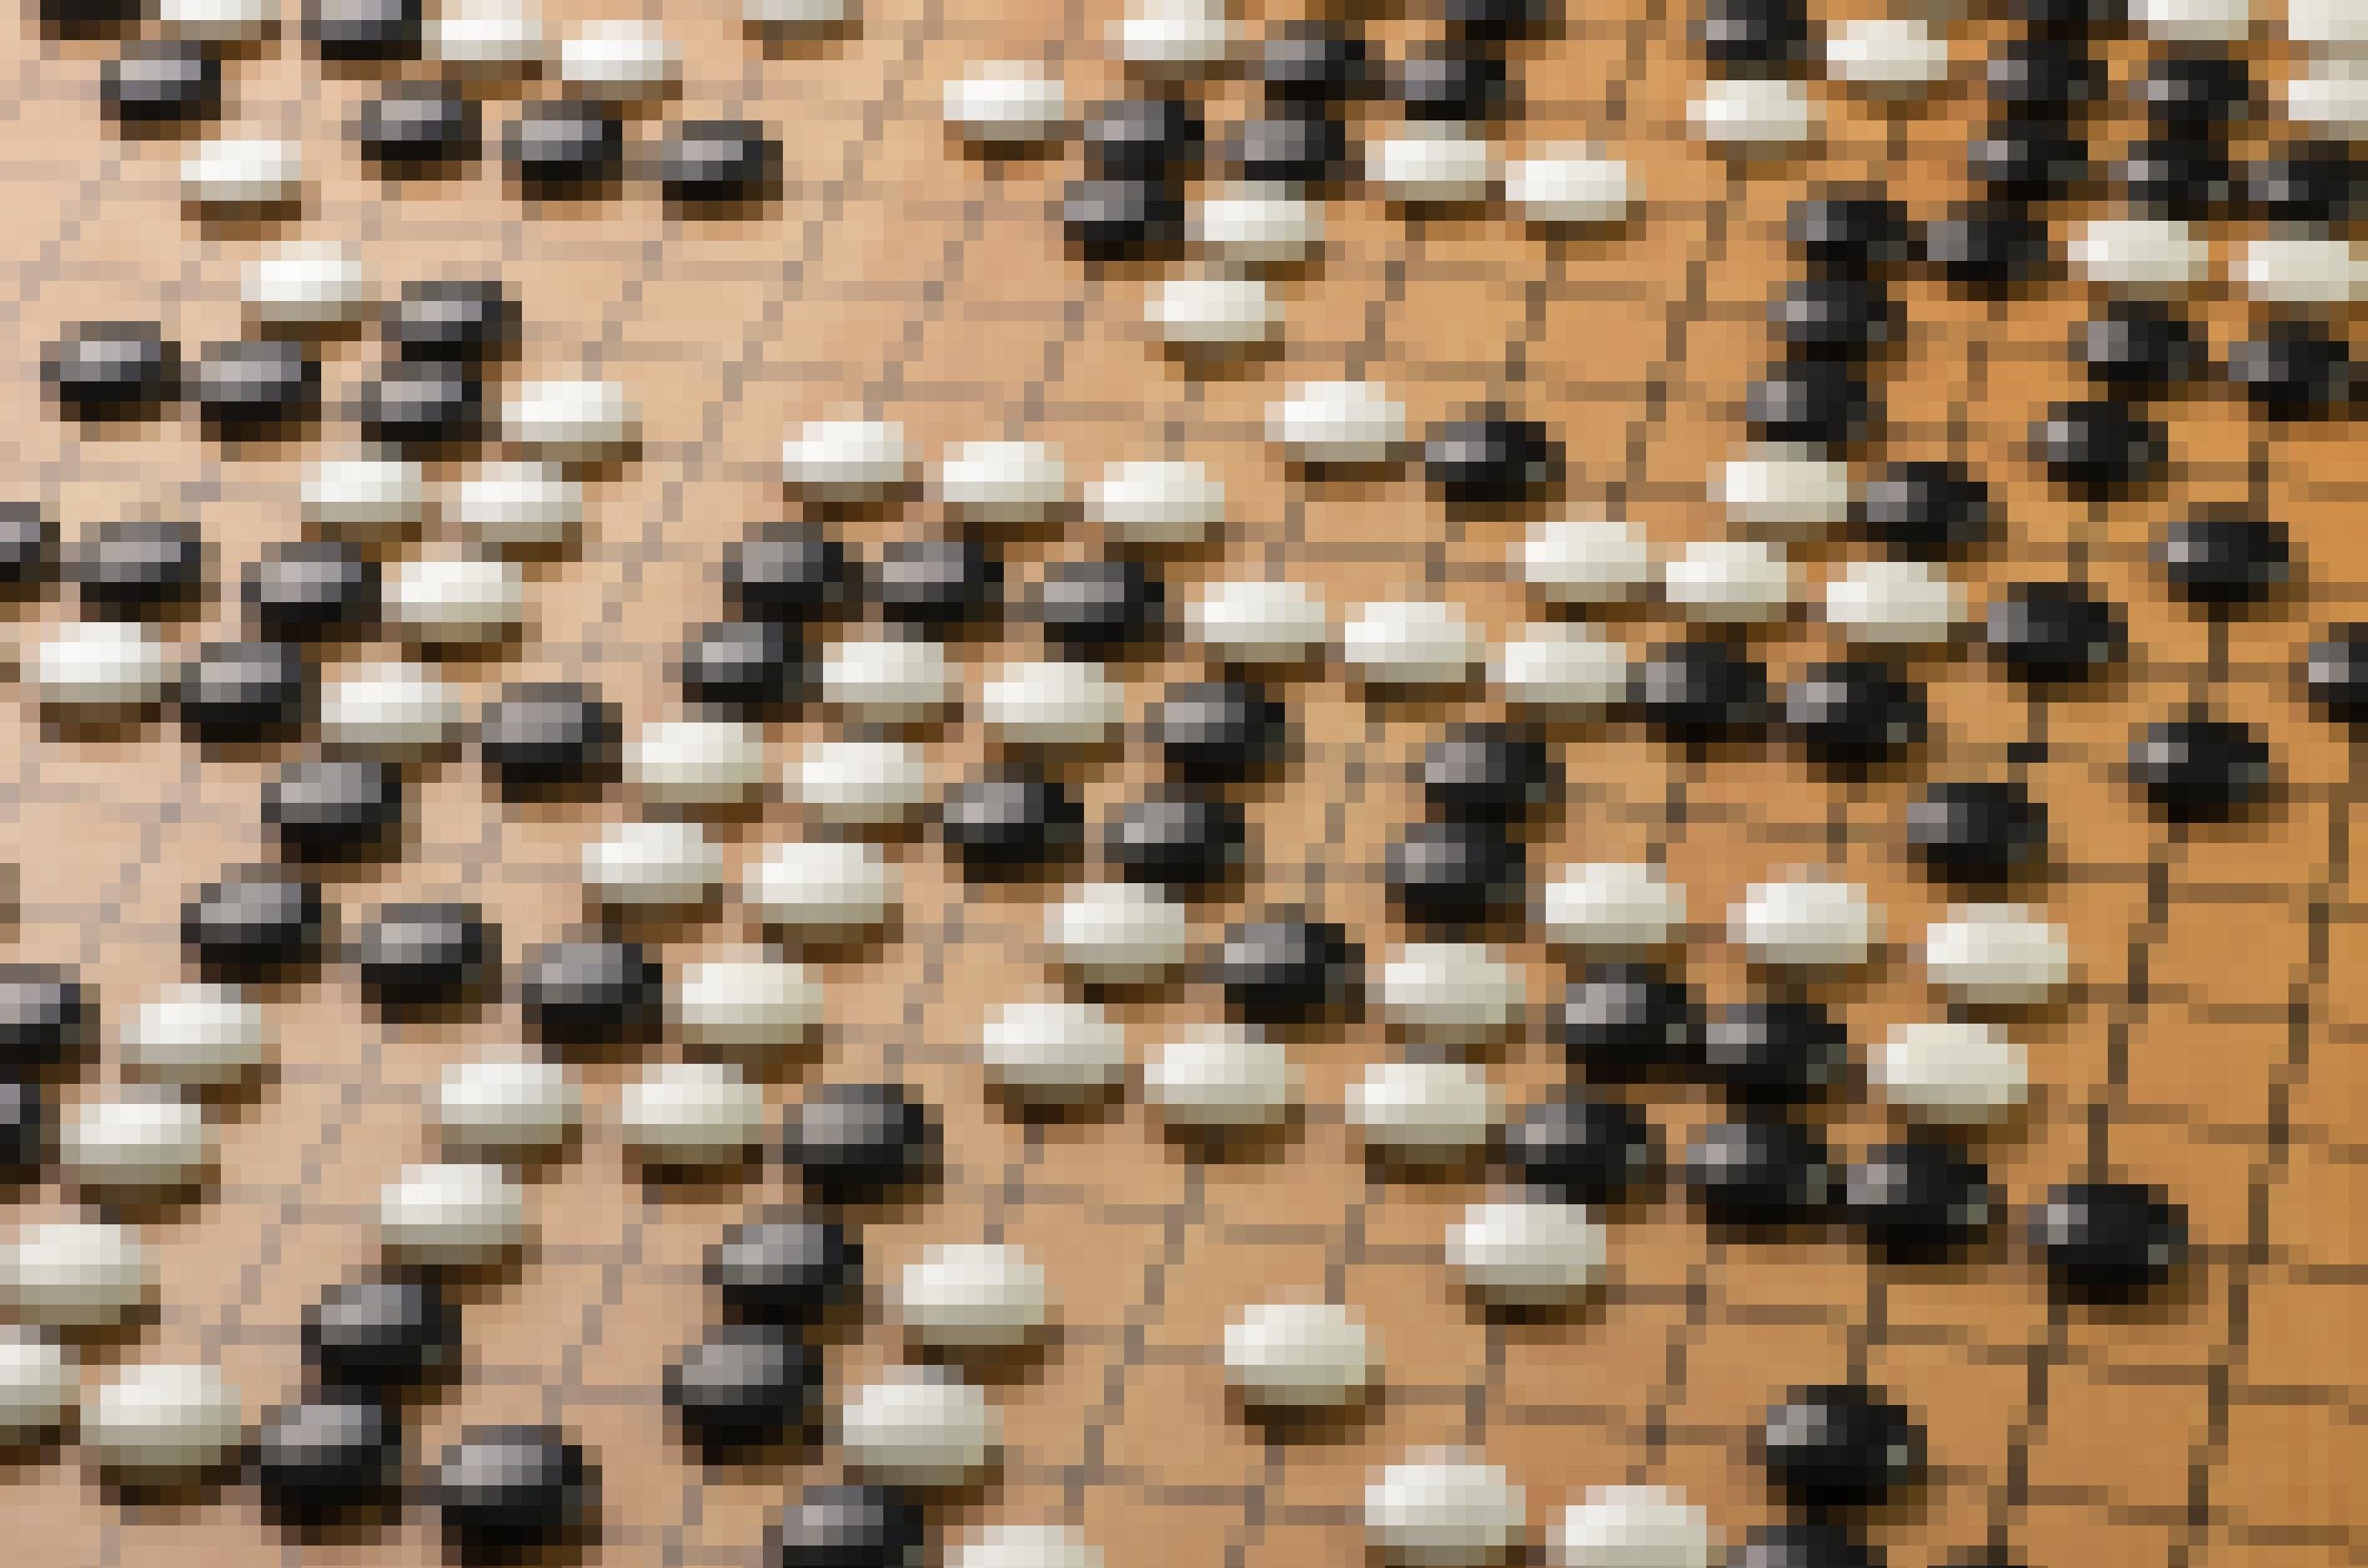 Zahlreiche schwarze und weiße linsenförmige Spielsteine liegen auf einem braunen Spielbrett. Das Brett ist von vielen schwarzen senkrecht wie waagerecht verlaufenden Linien in kleine Quadrate geteilt. Die Spielsteine liegen auf den Schnittpunkten jeweils zweier Linien.